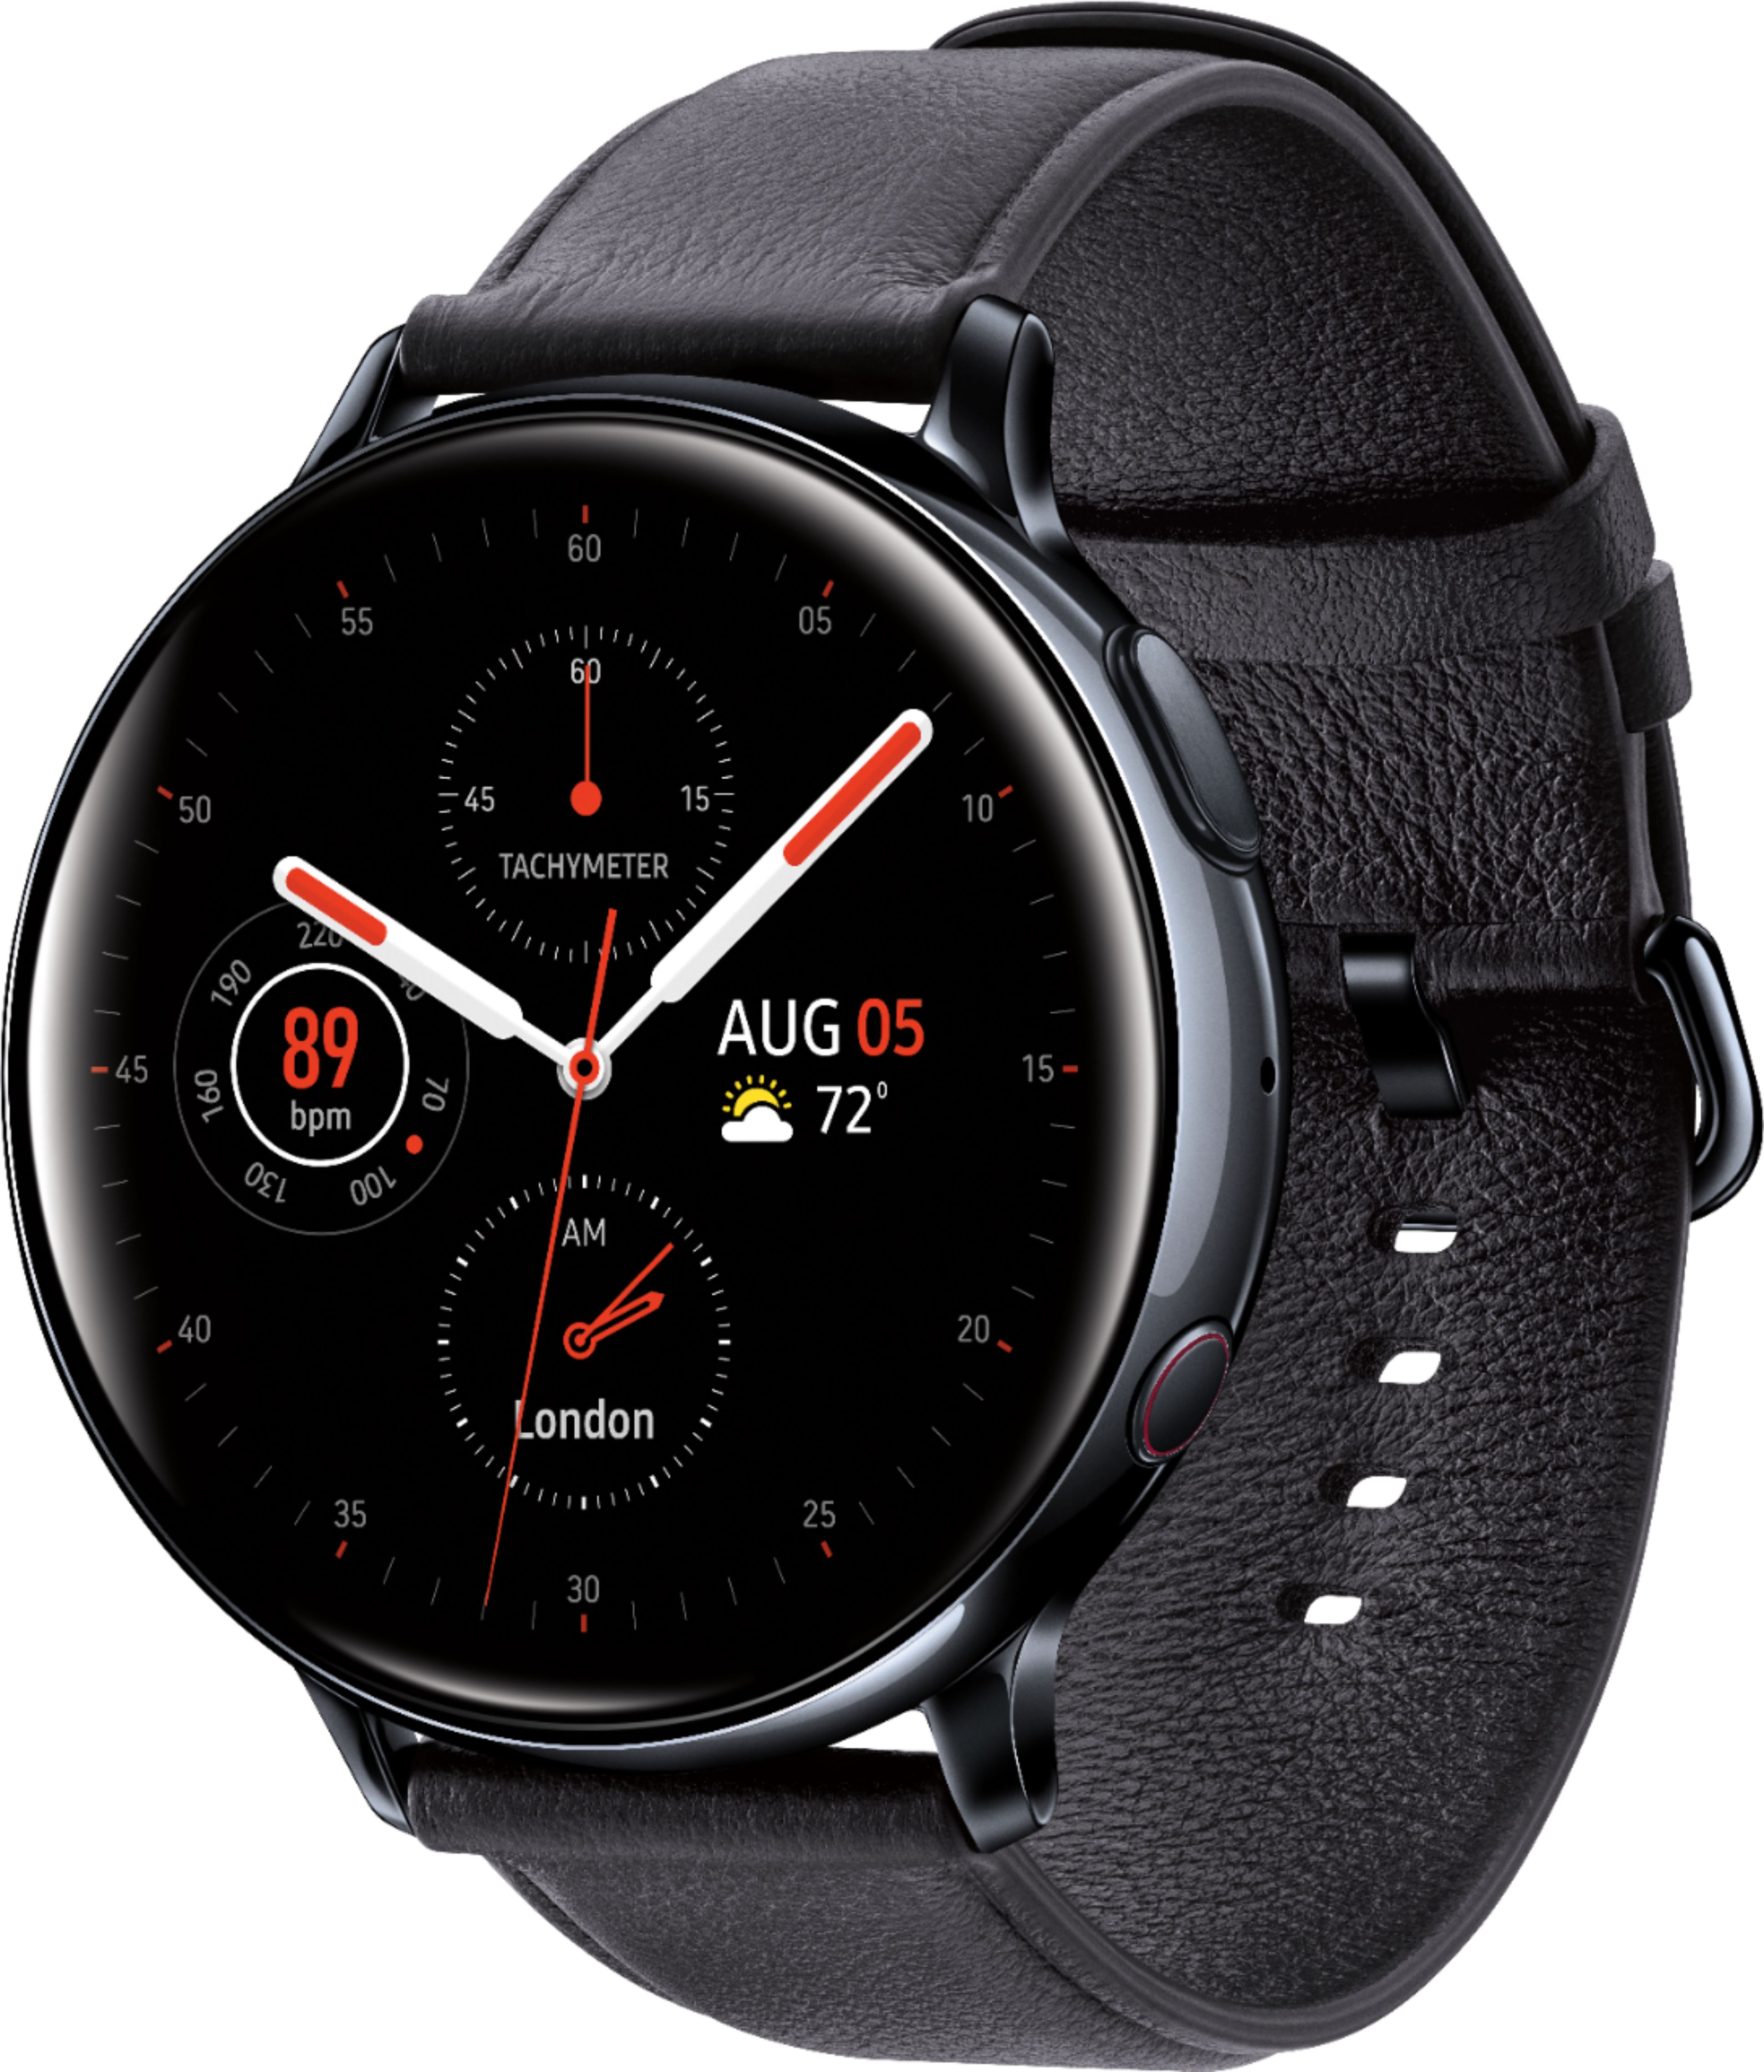 Angle View: SAMSUNG Galaxy Watch 3 41mm Mystic Silver BT - SM-R850NZSAXAR